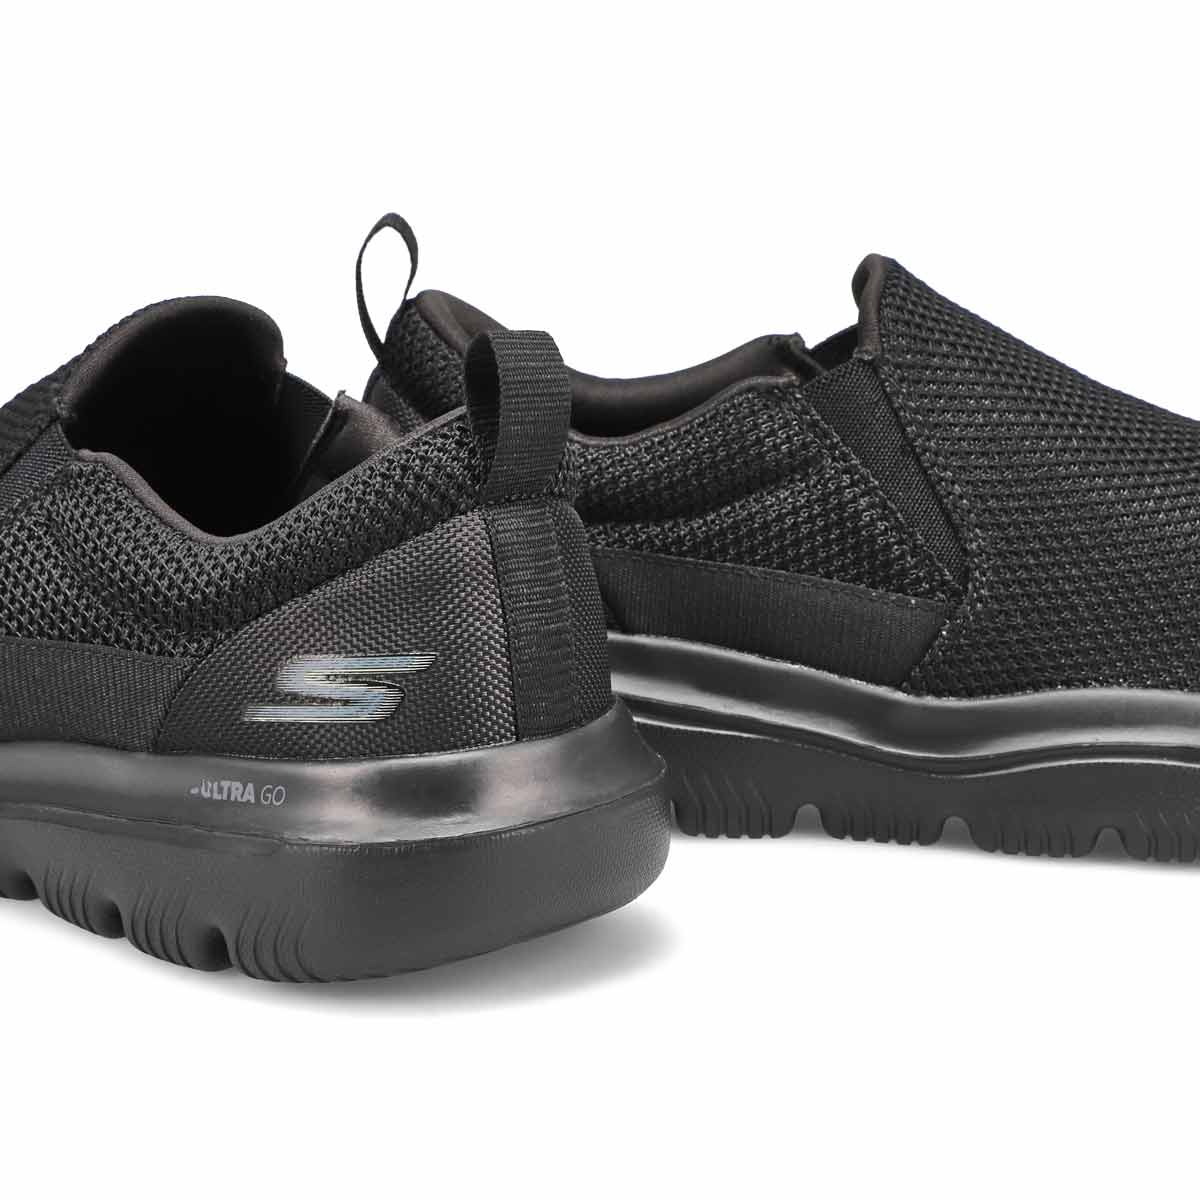 Men's Gowalk Ultra Impeccable Shoe - Black